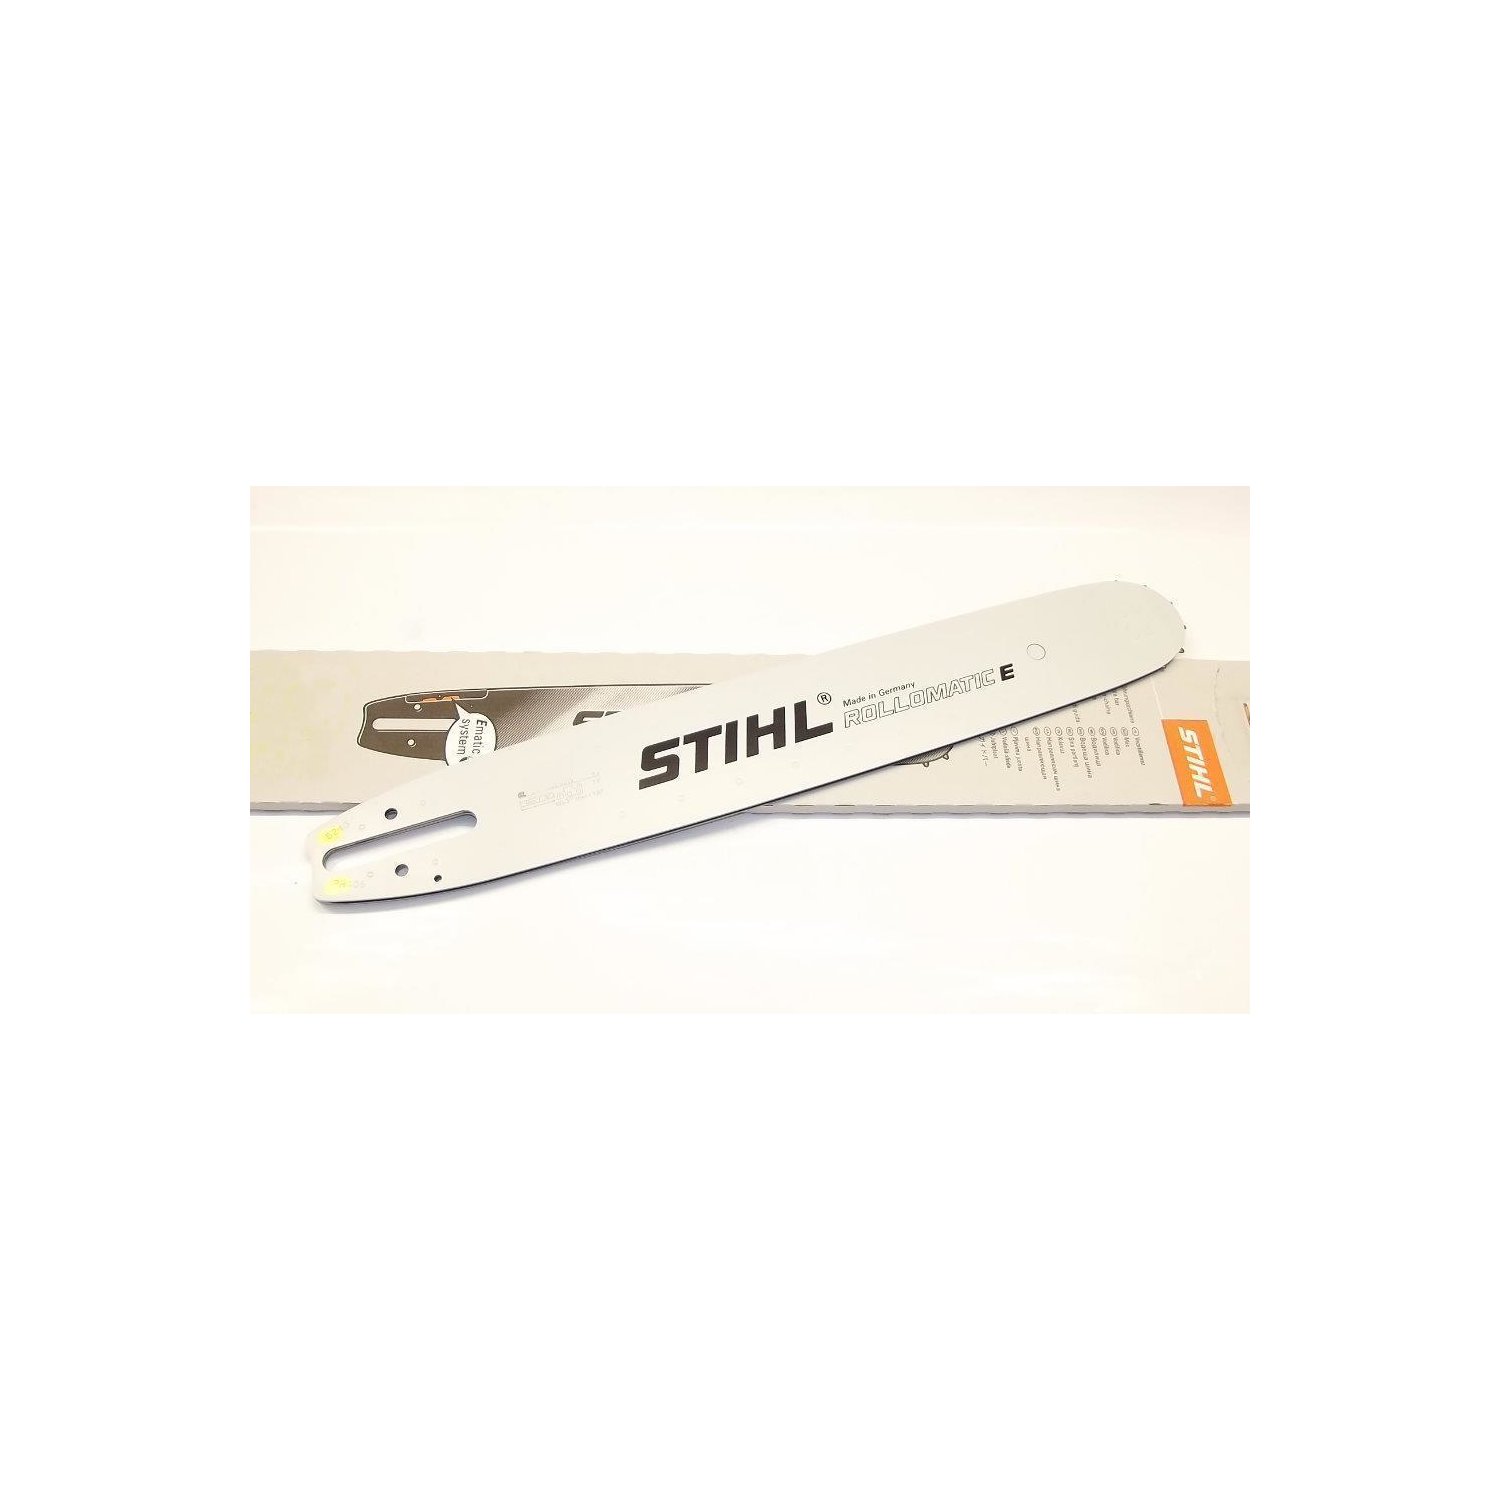 Schwert und Kette für STIHL  3/8-1,6-60 NEU/OVP 40 CM  Schiene 